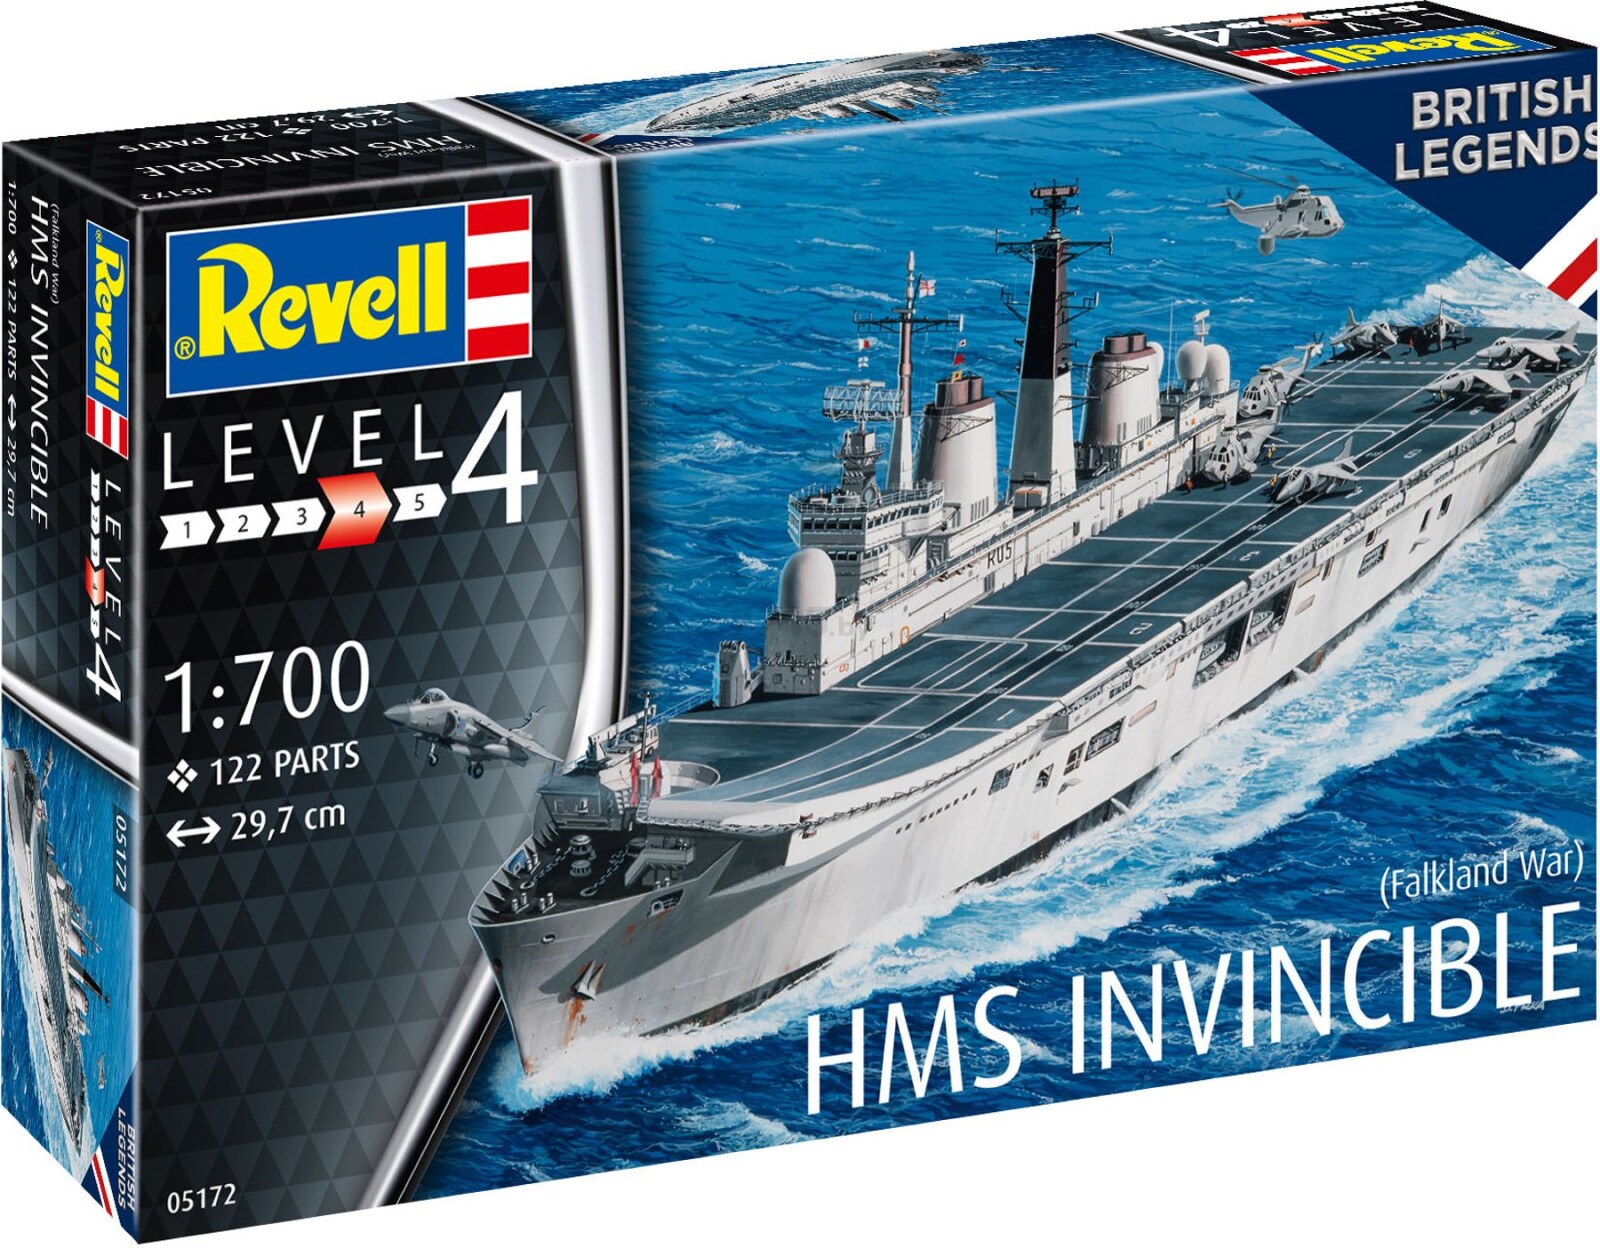 Сборная модель REVELL Авианосец HMS Invincible Фолклендская война 1:700 (5172) - Фото 6